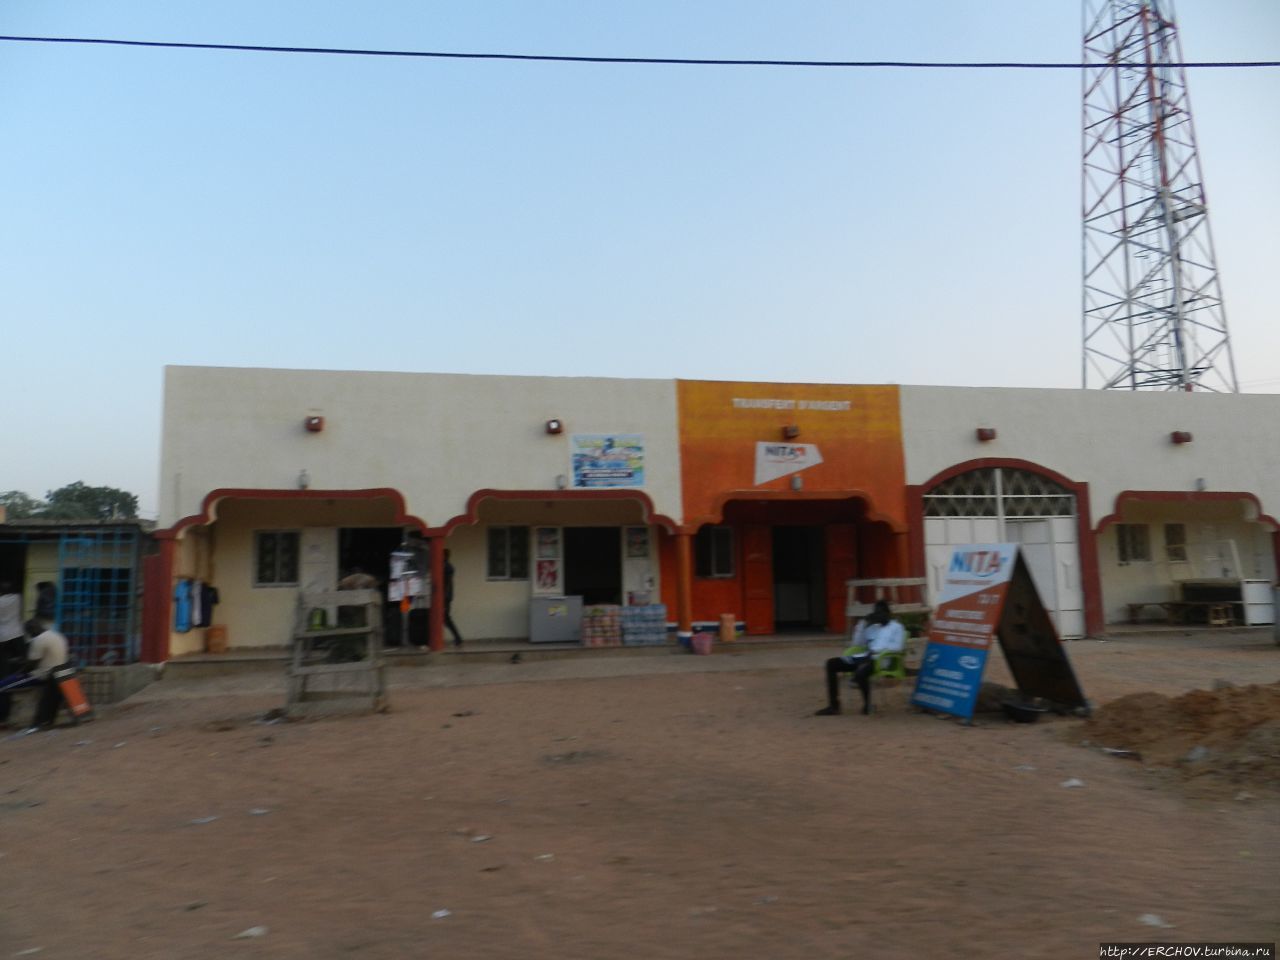 Нигер. Ч — 25. Скотоводческий рынок Зиндер, Нигер